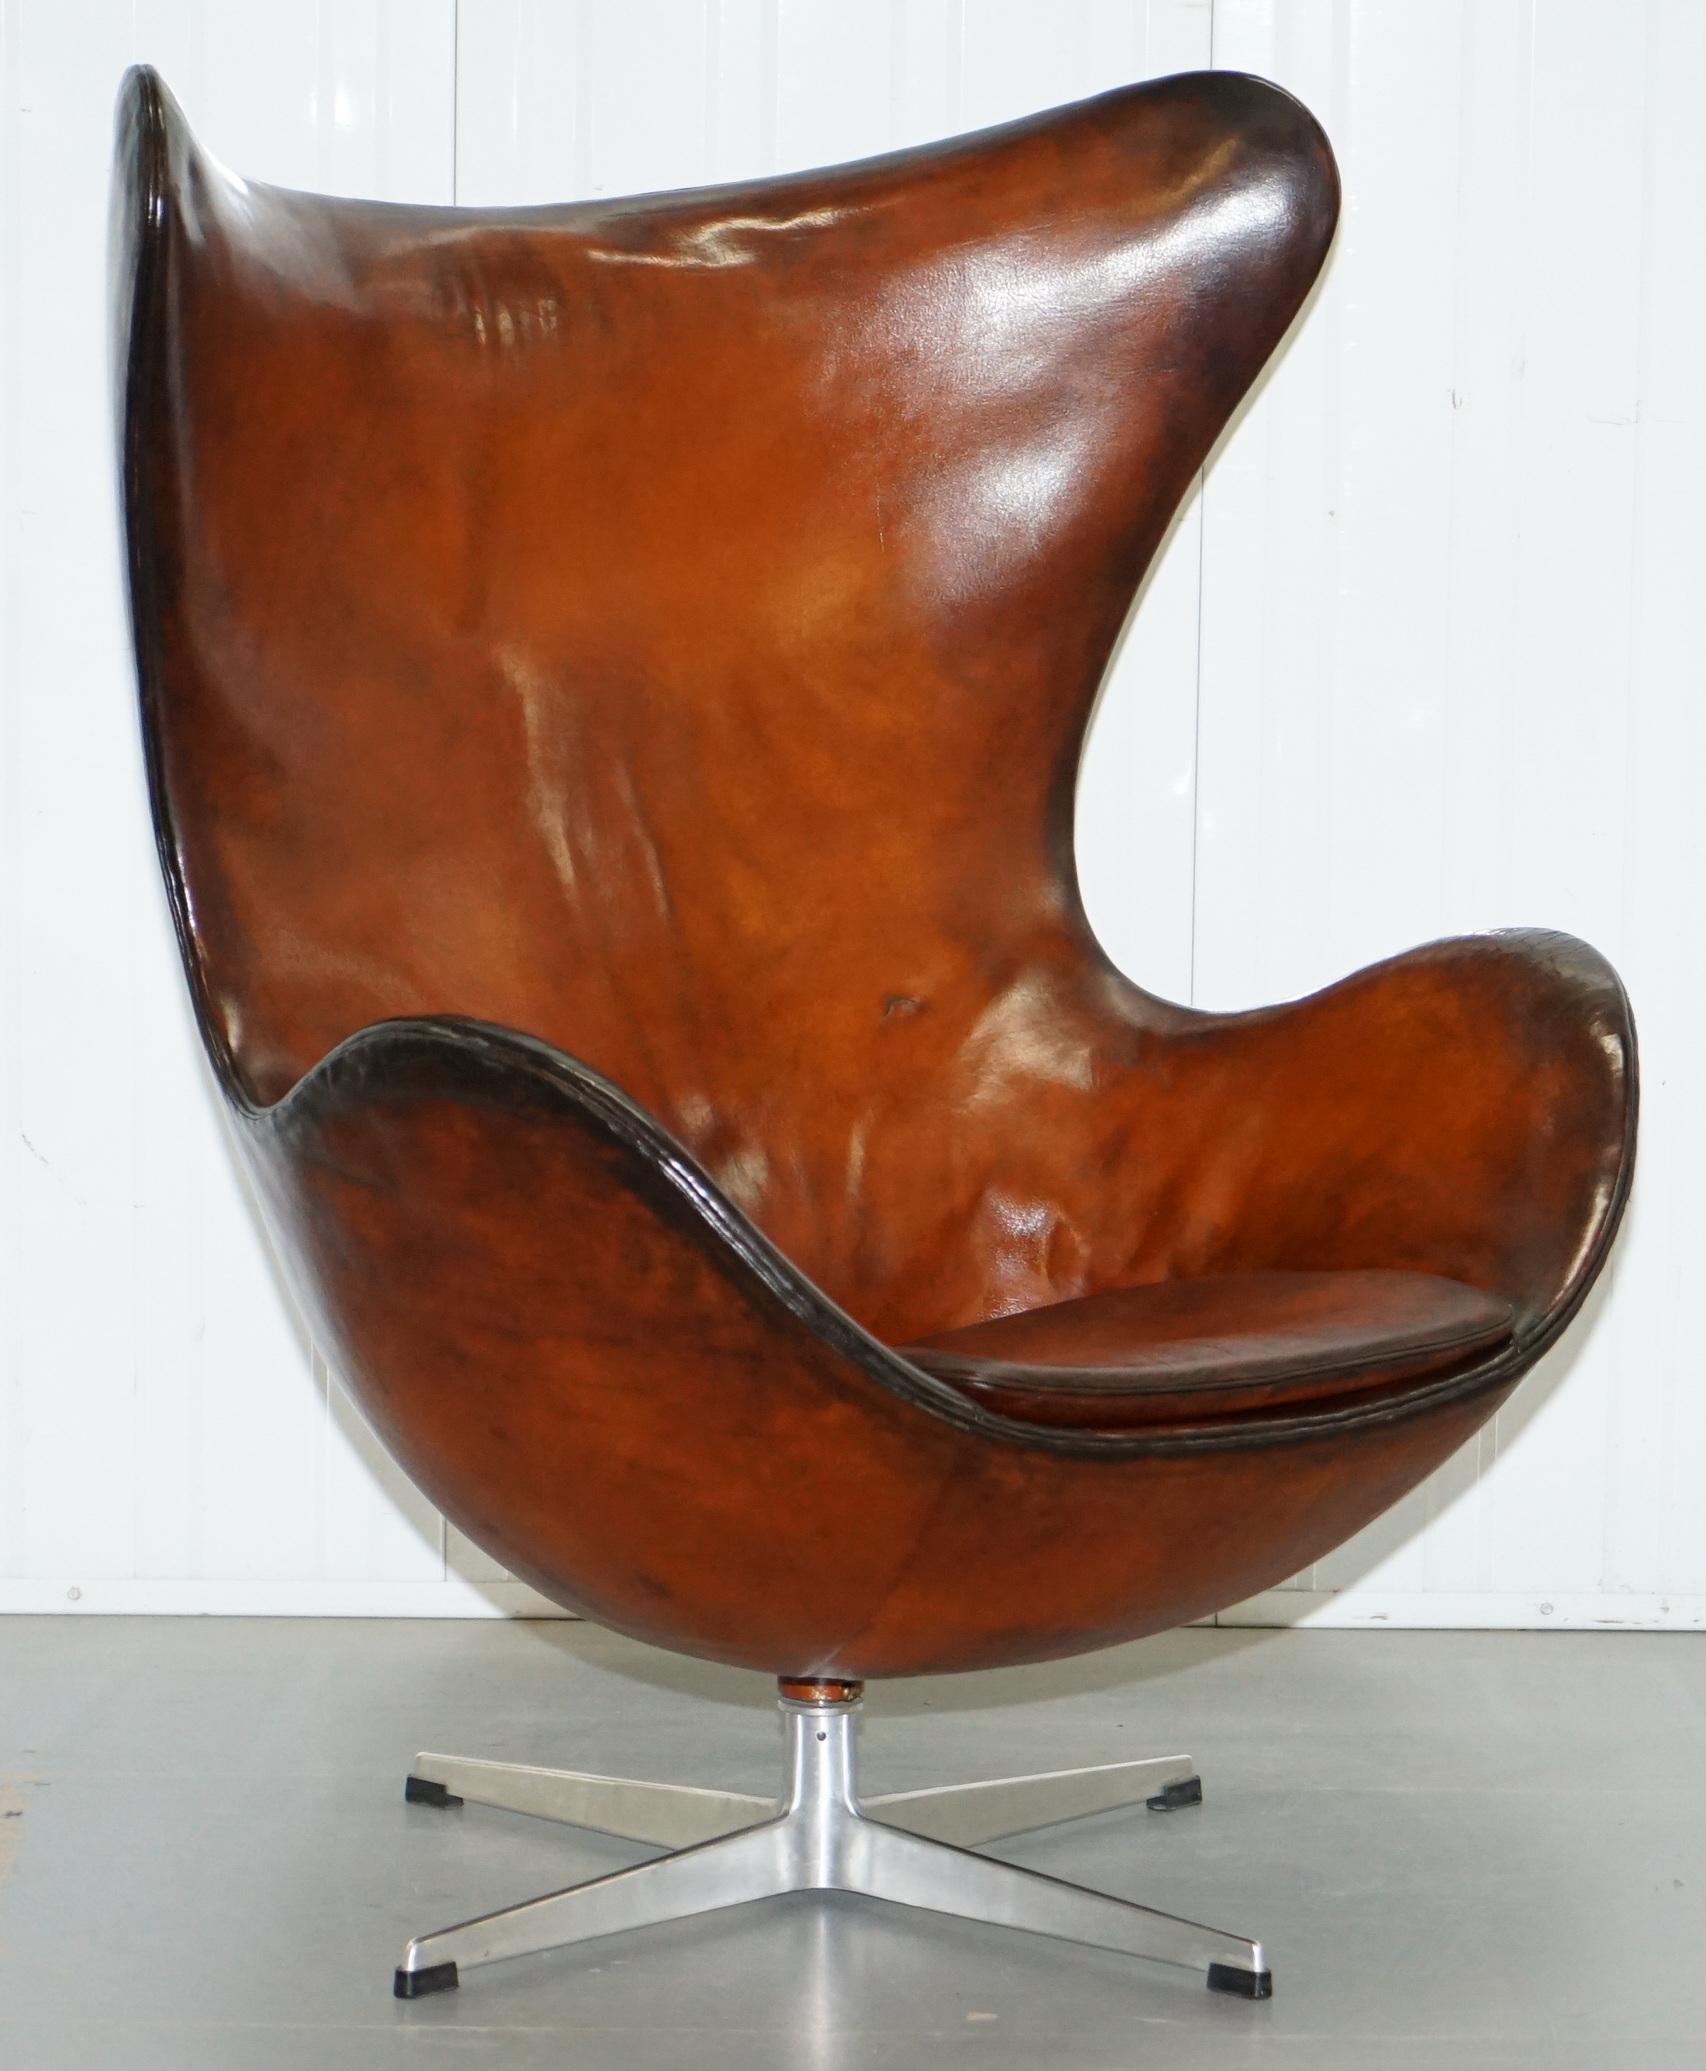 Nous sommes ravis d'offrir à la vente cet original:: 1963 Firtz Hansen Arne Jacobson teint à la main whisky brun cuir chaise oeuf numéro de modèle 3316

Une trouvaille rare dans un état restauré:: cette pièce est aujourd'hui considéré comme de